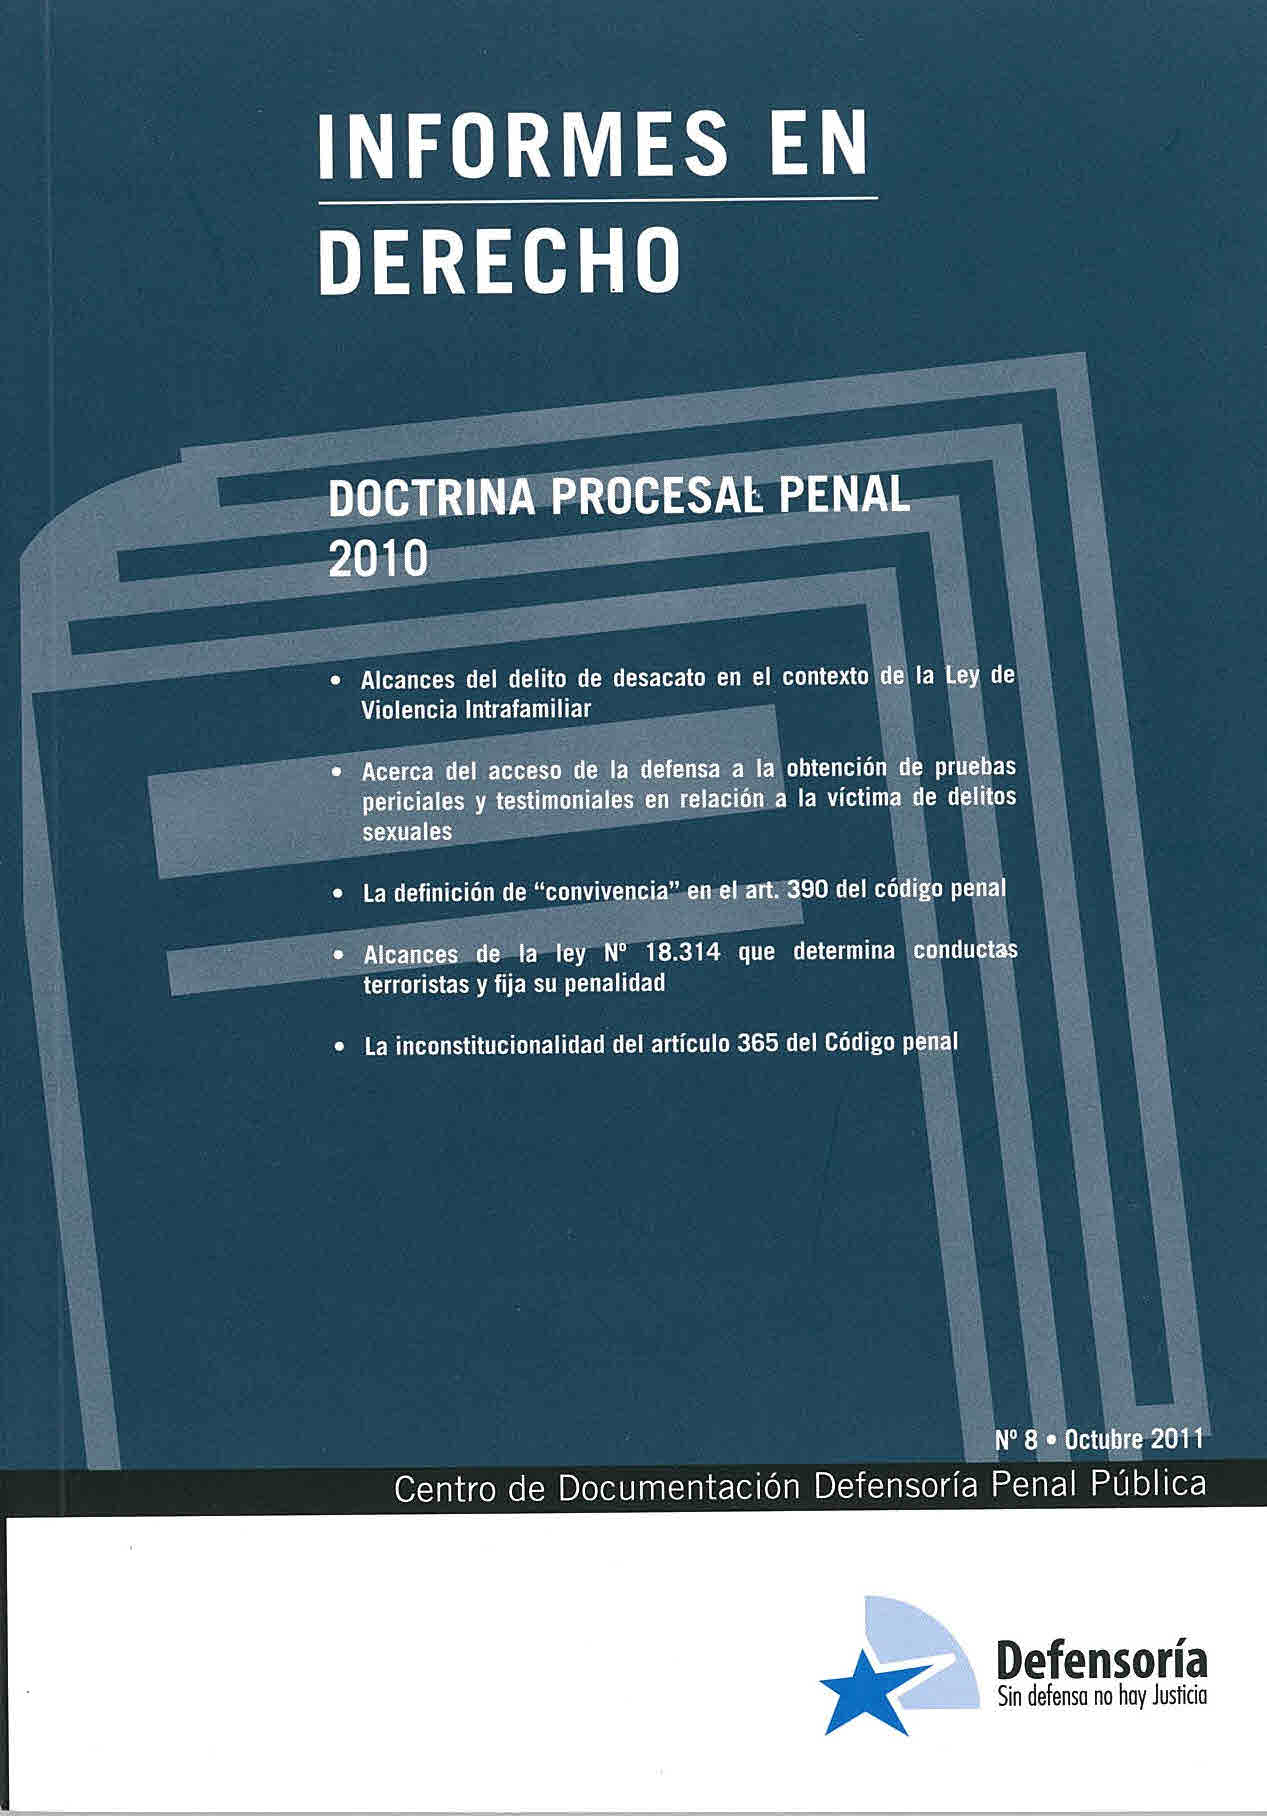 Doctrina procesal penal 2010